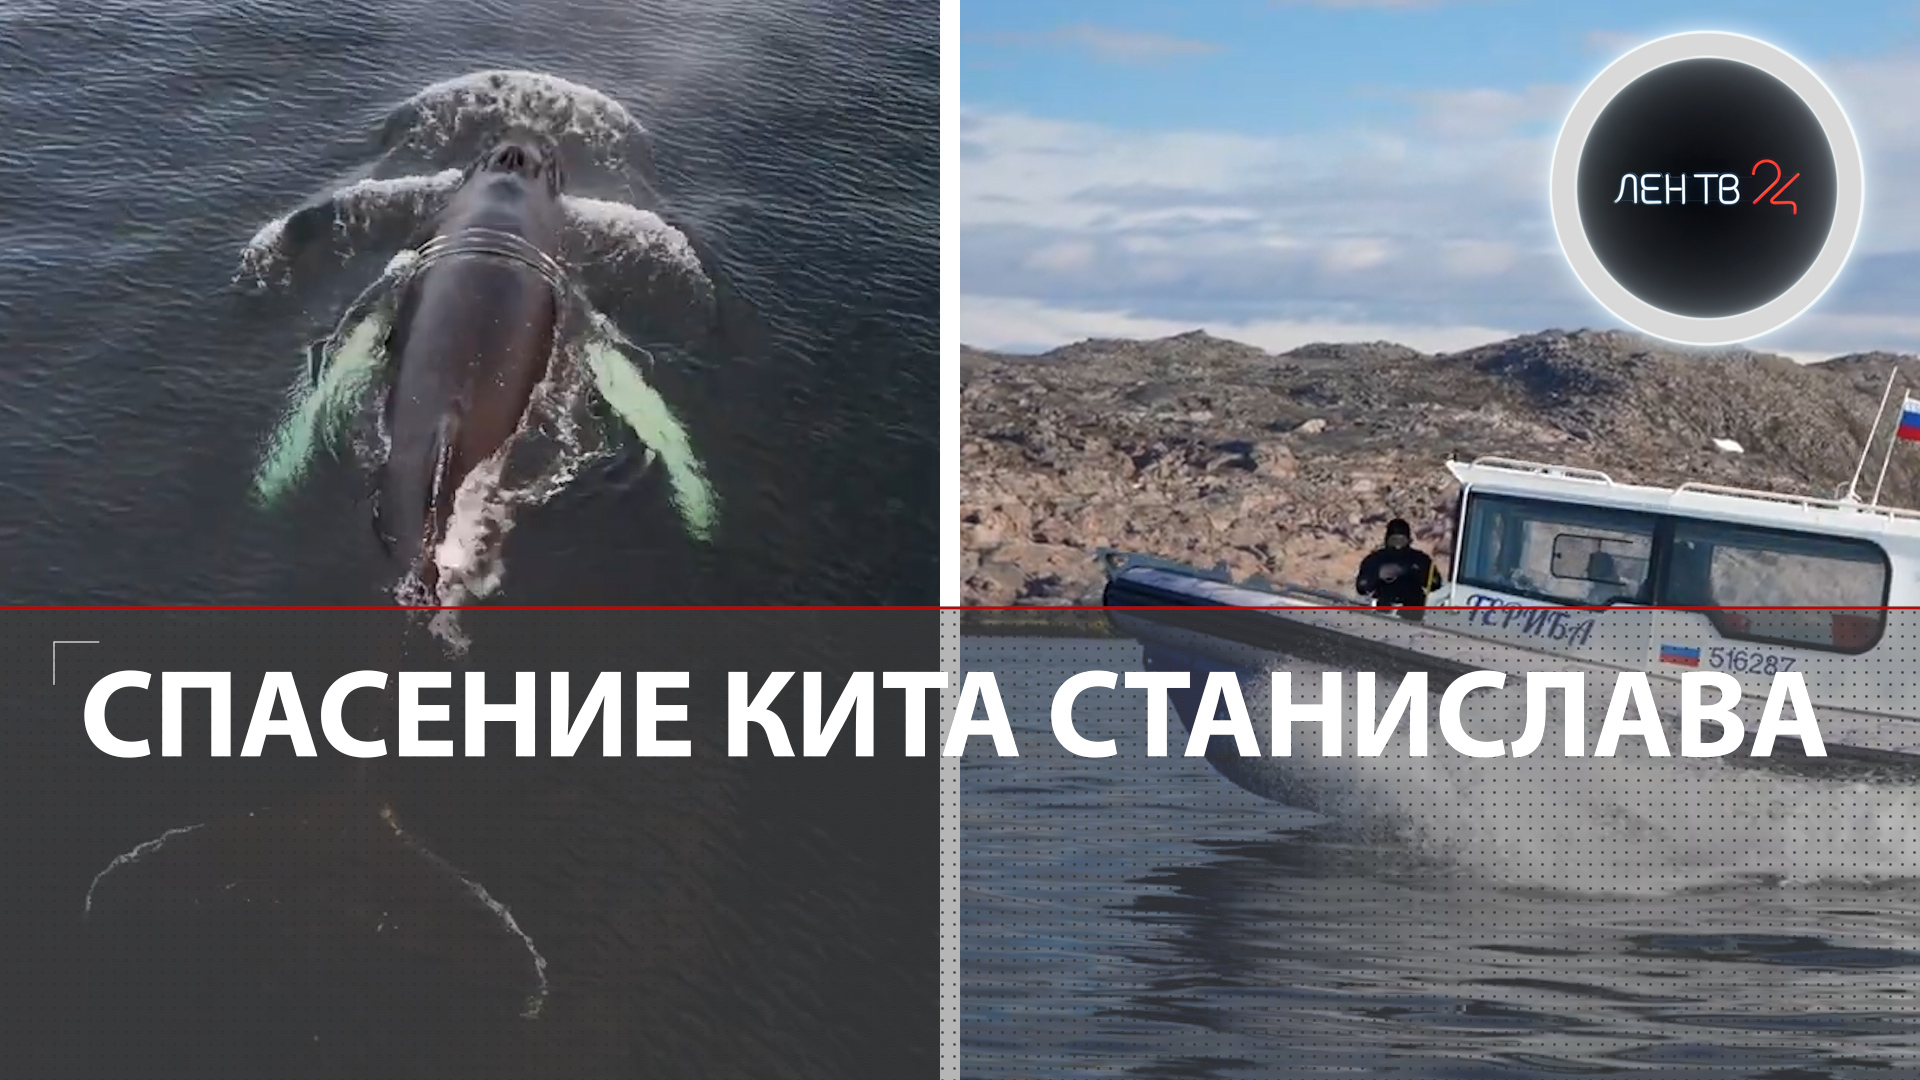 Спасение кита Станислава | Первое успешное спасение краснокнижного горбатого кита в России